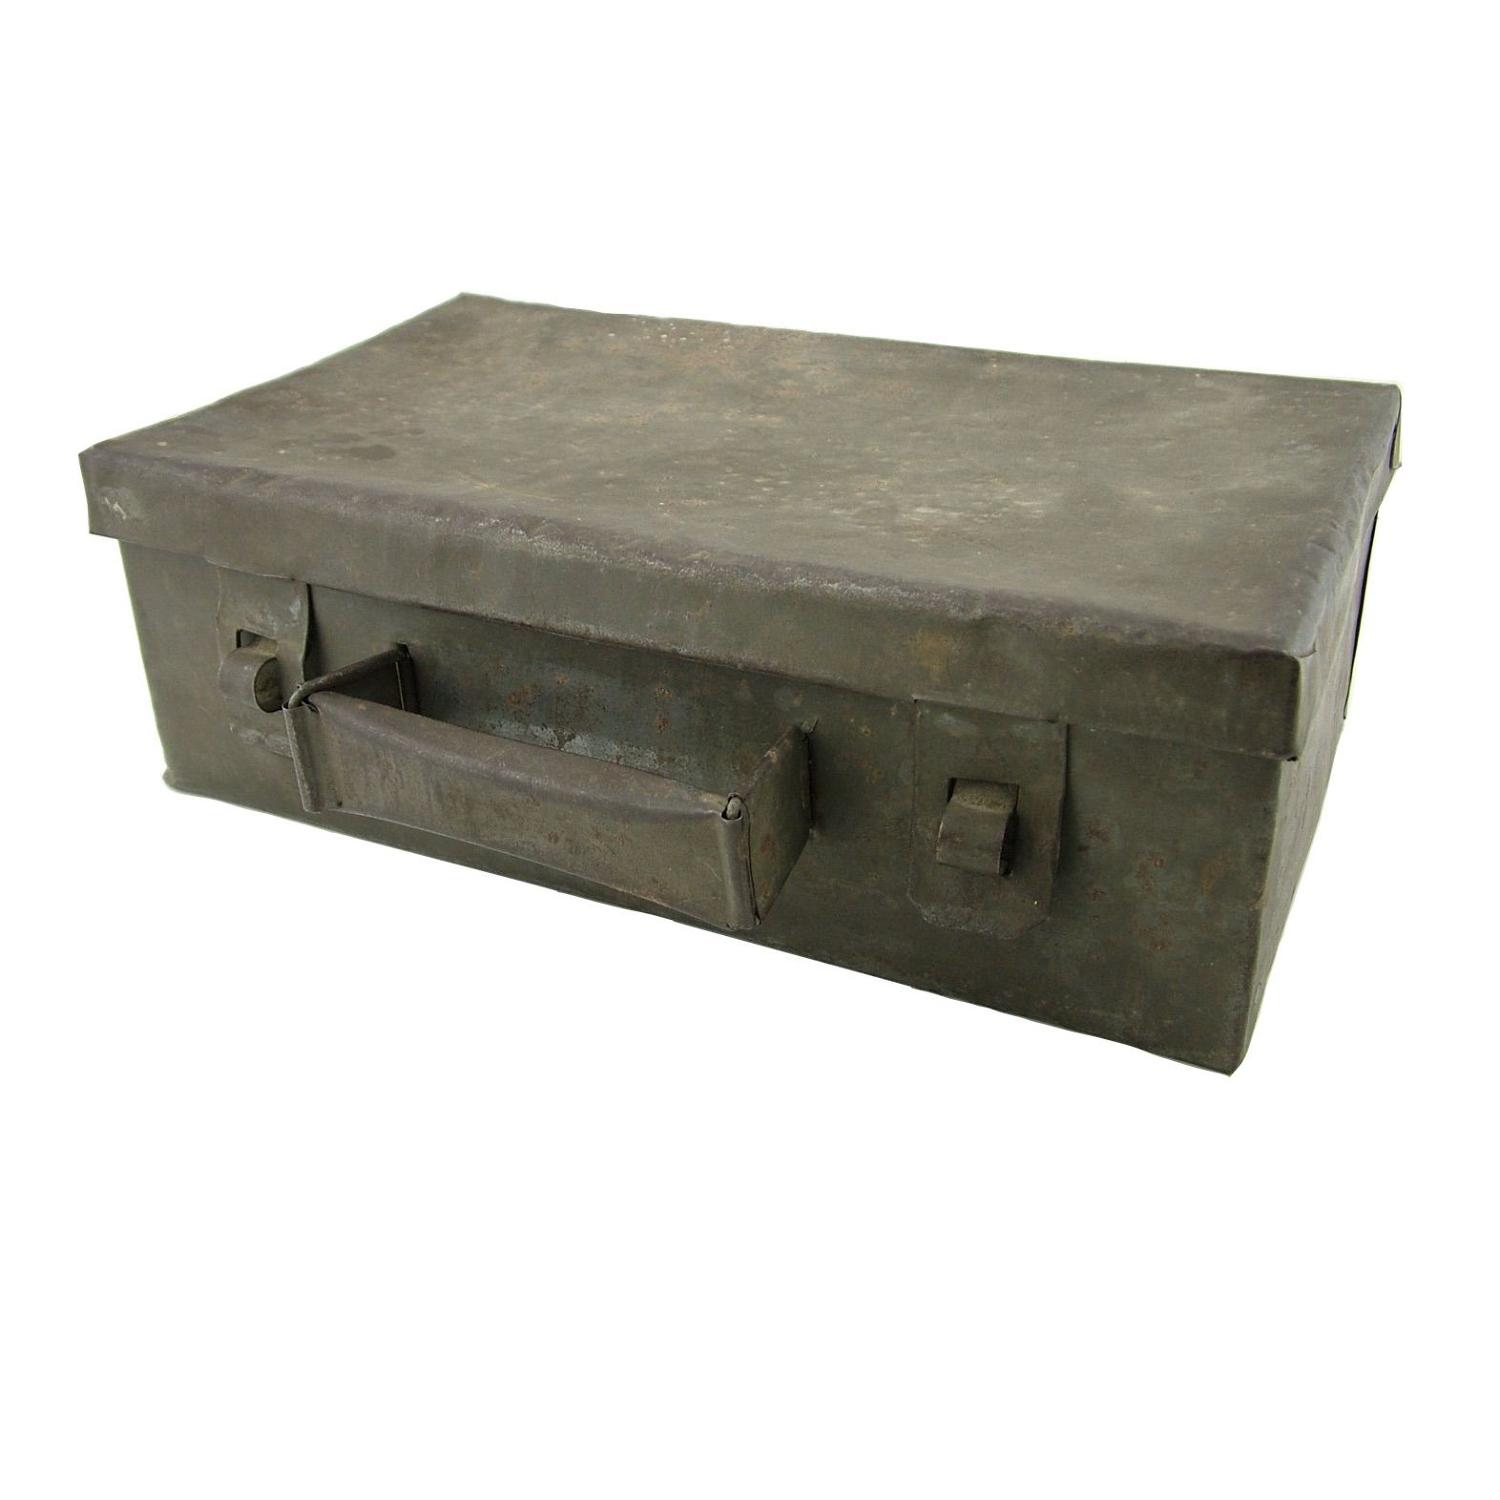 WW2 POW camp made briefcase